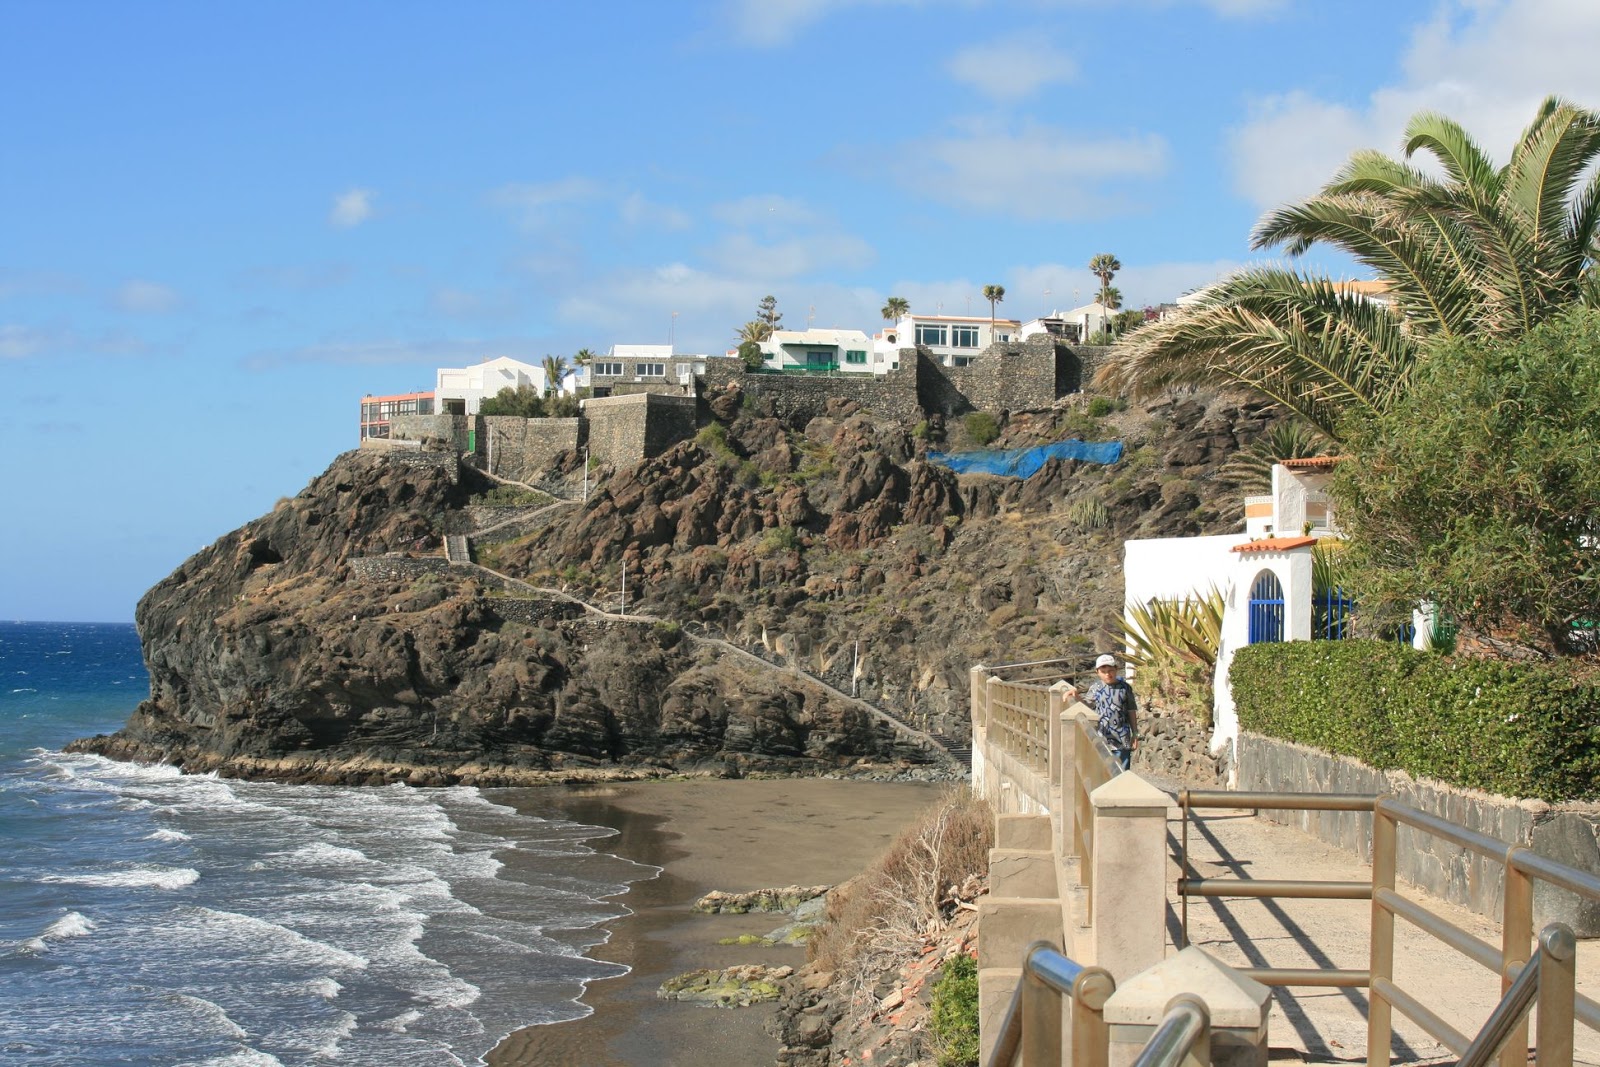 Zdjęcie Playa del besudo z poziomem czystości wysoki